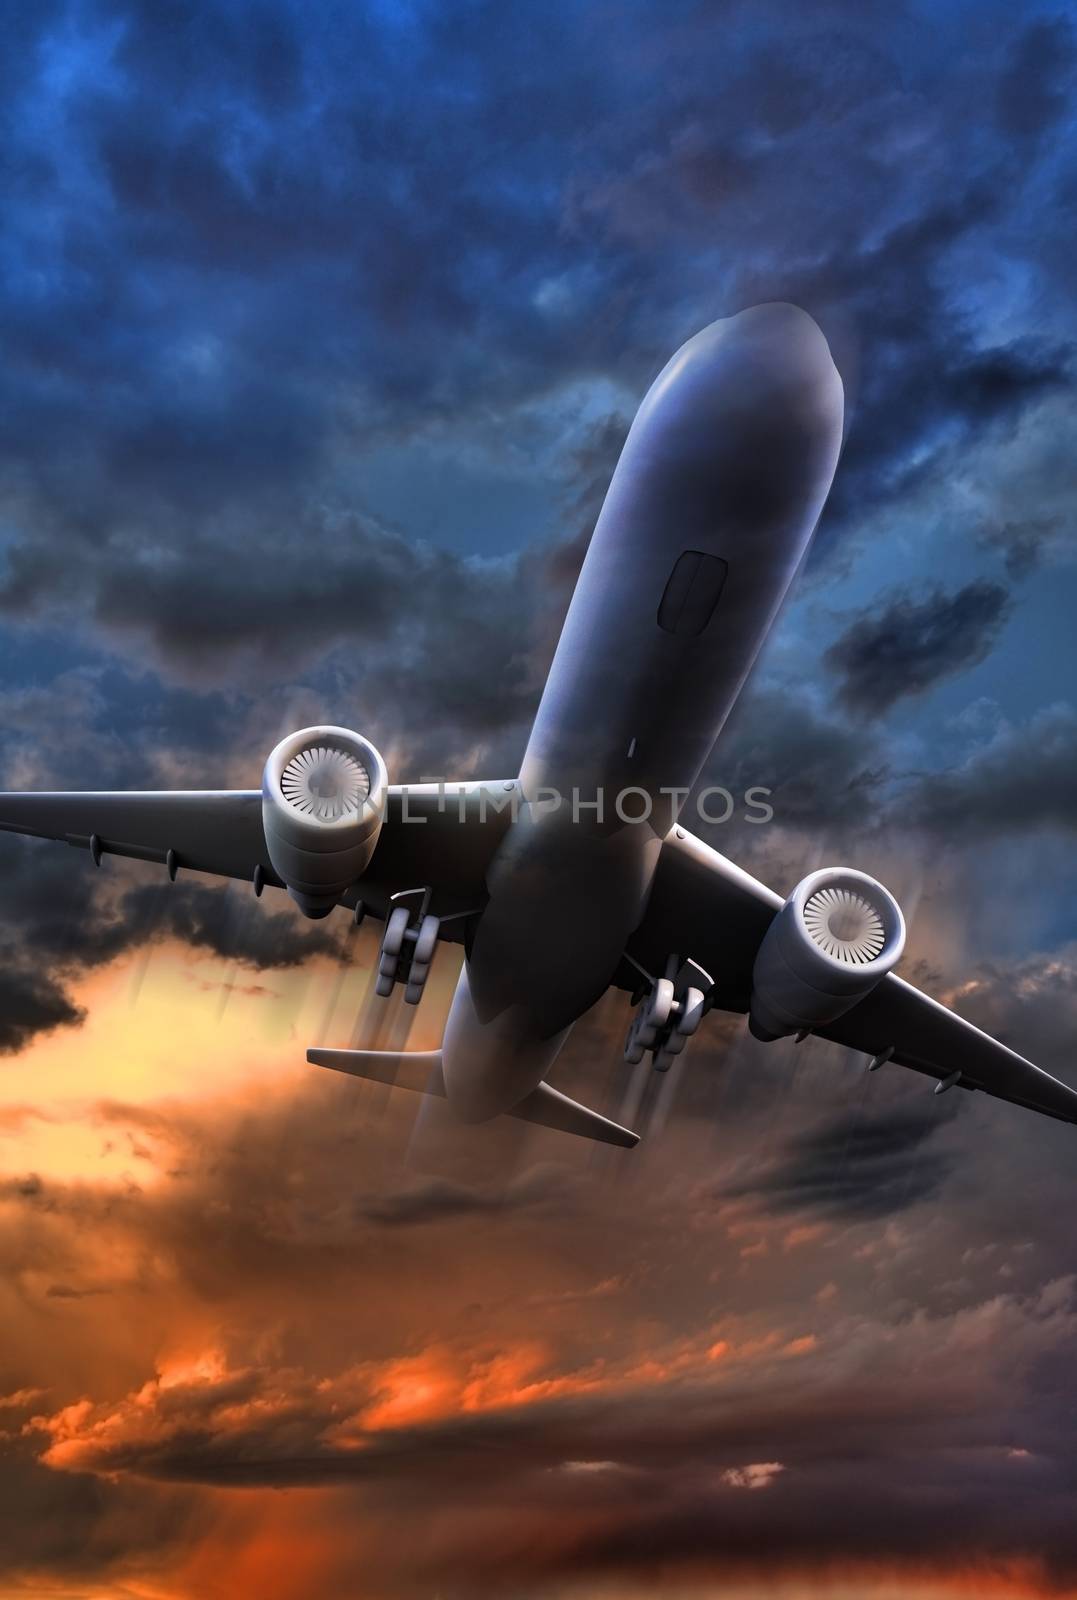 Airliner Take Off Illustration. 3D Render Jet Plane Take Off Illustration. Colorful Stormy Sky. Vertical Image.